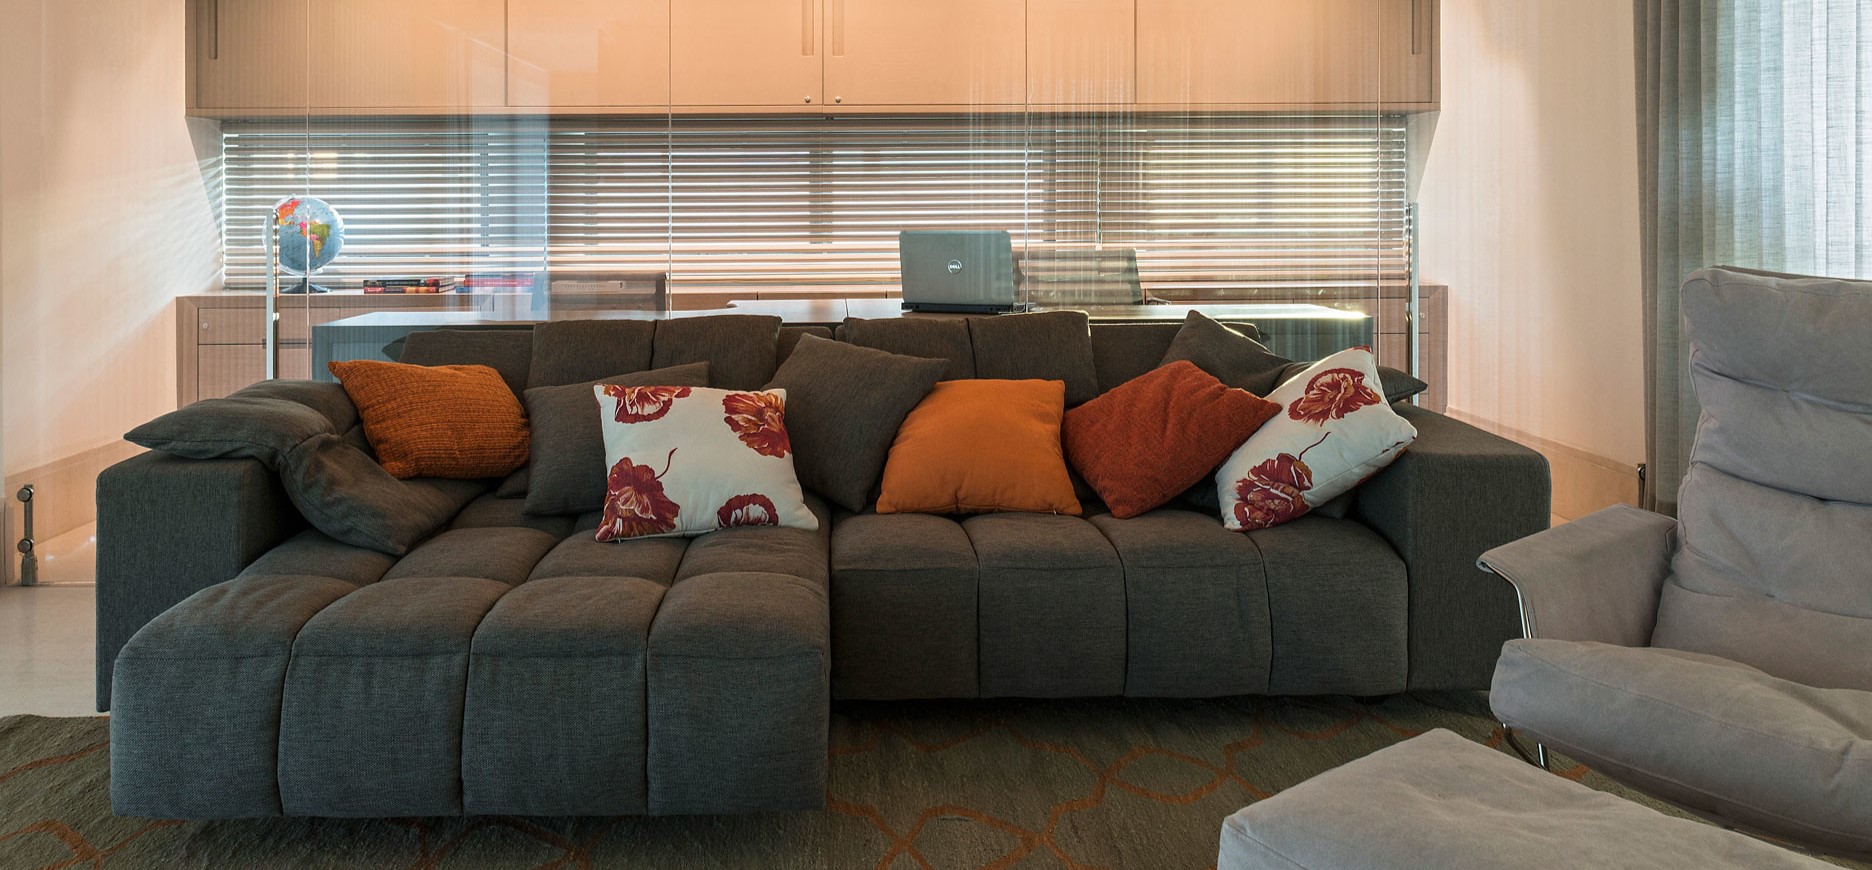 Модные модели диванов: функциональная и стильная мягкая мебель